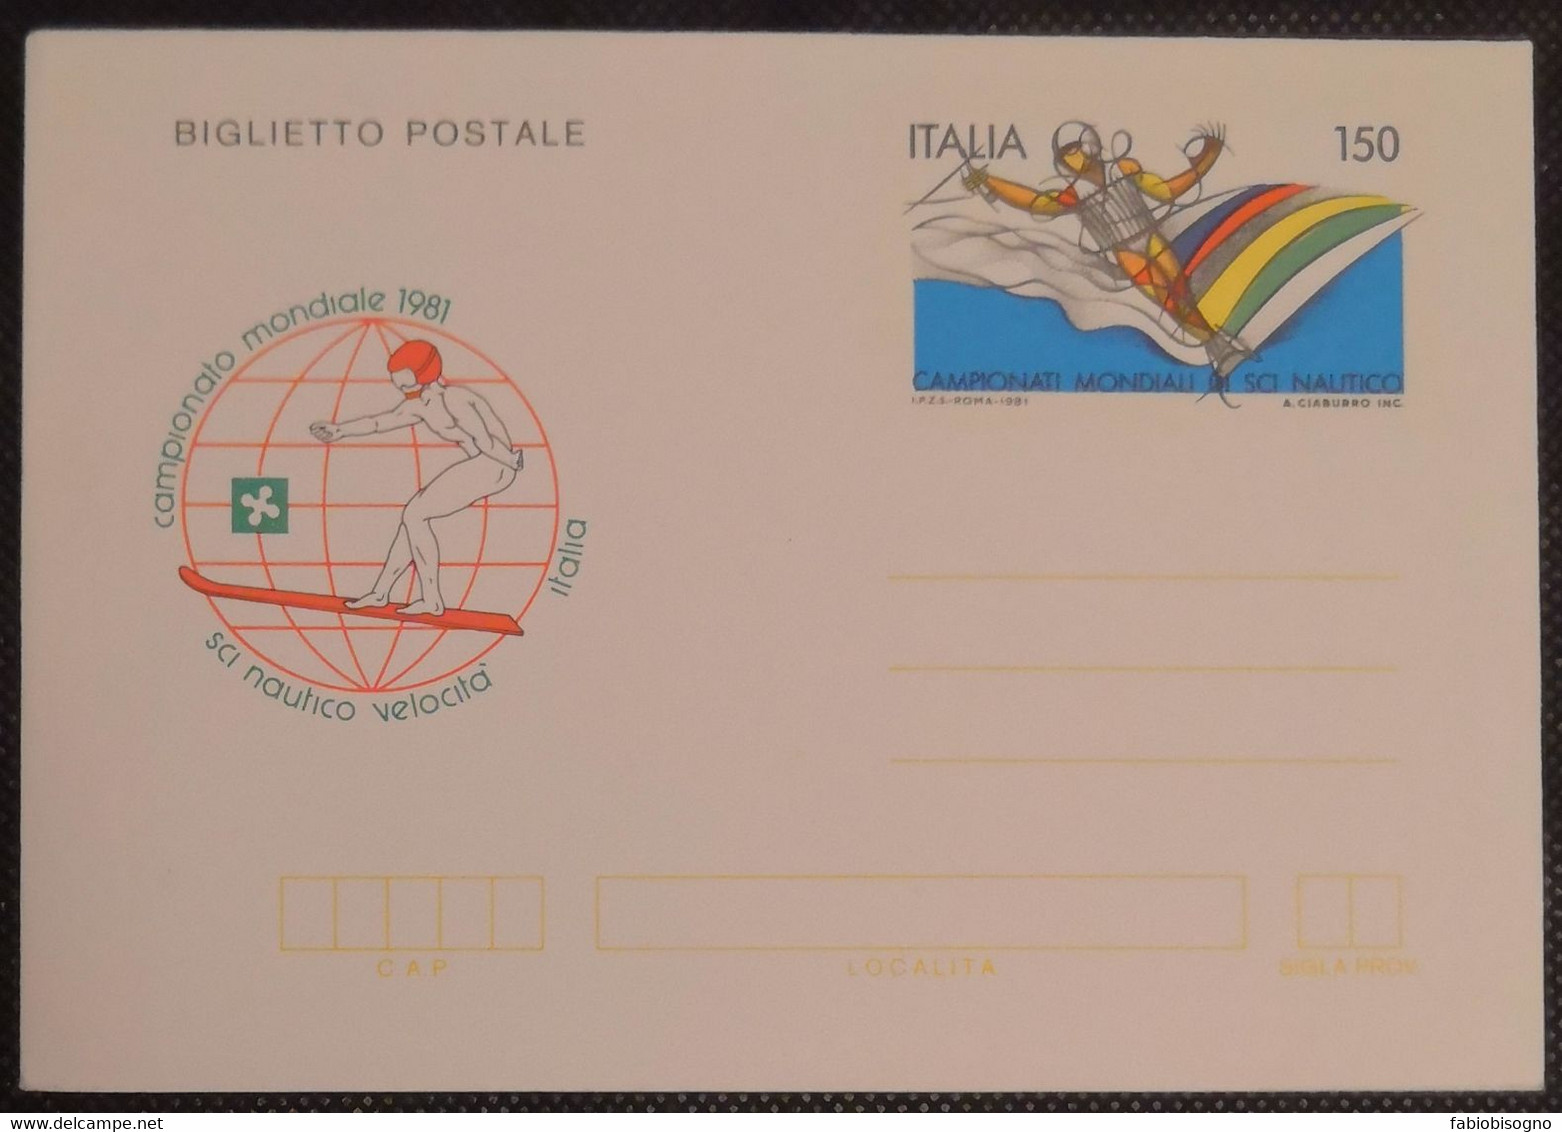 1981 Italia L.150 - Campionato Mondiale Sci Nautico Velocità - Postal Cover - Water-skiing